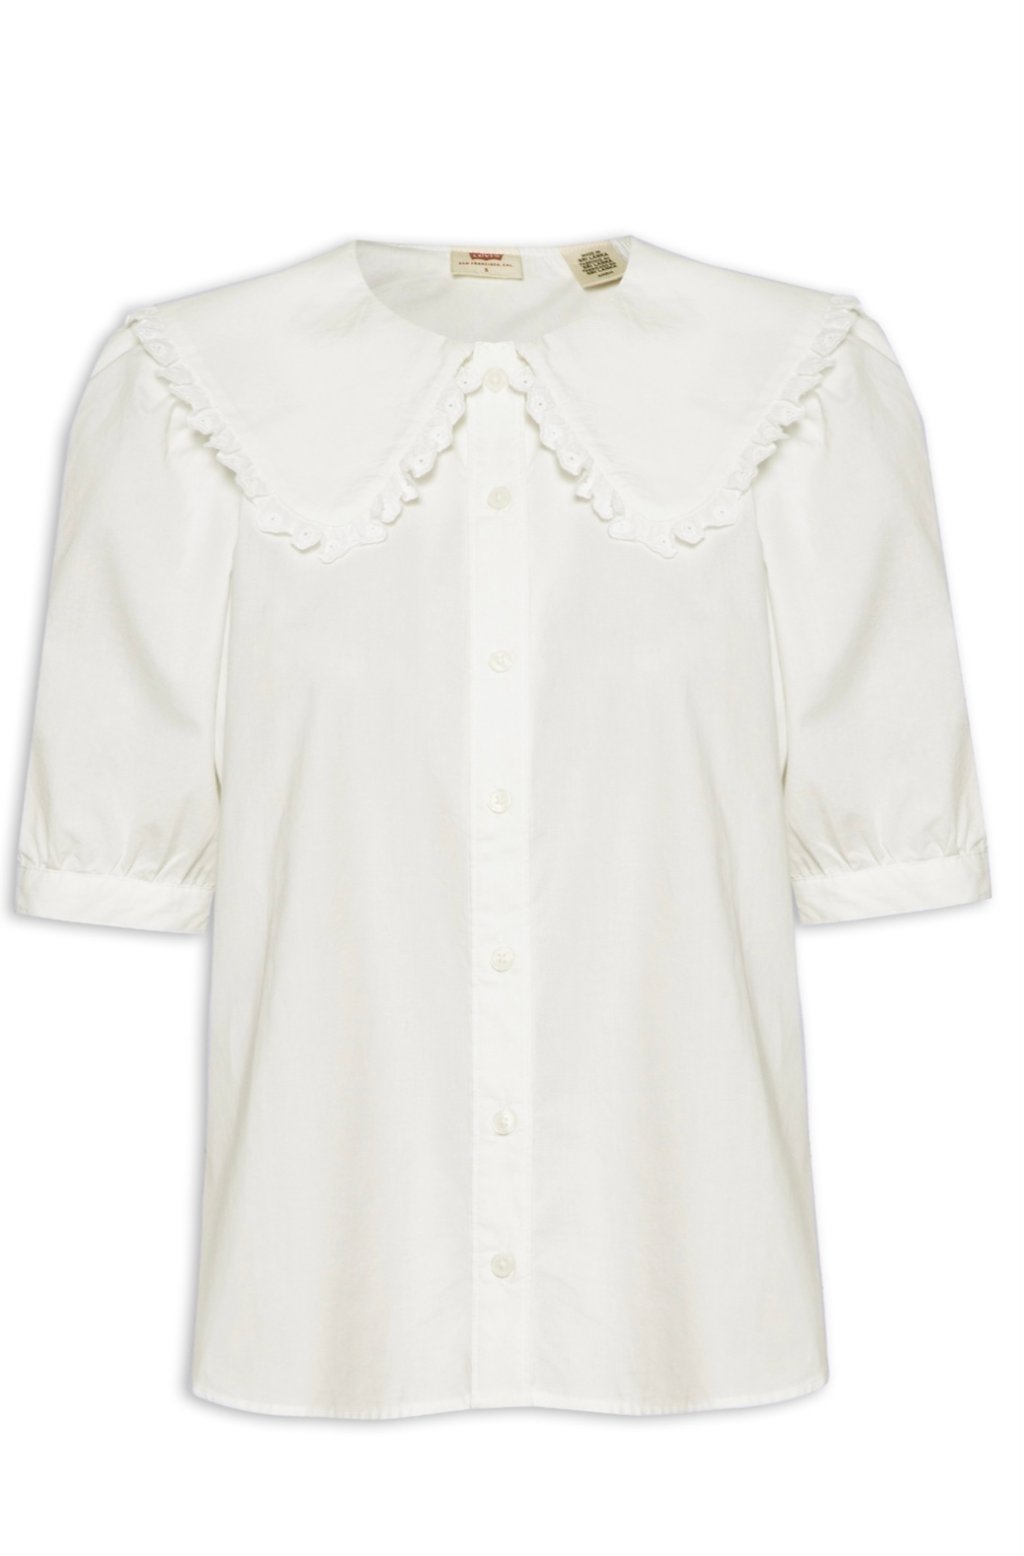 Camisa branca com colarinho bordado